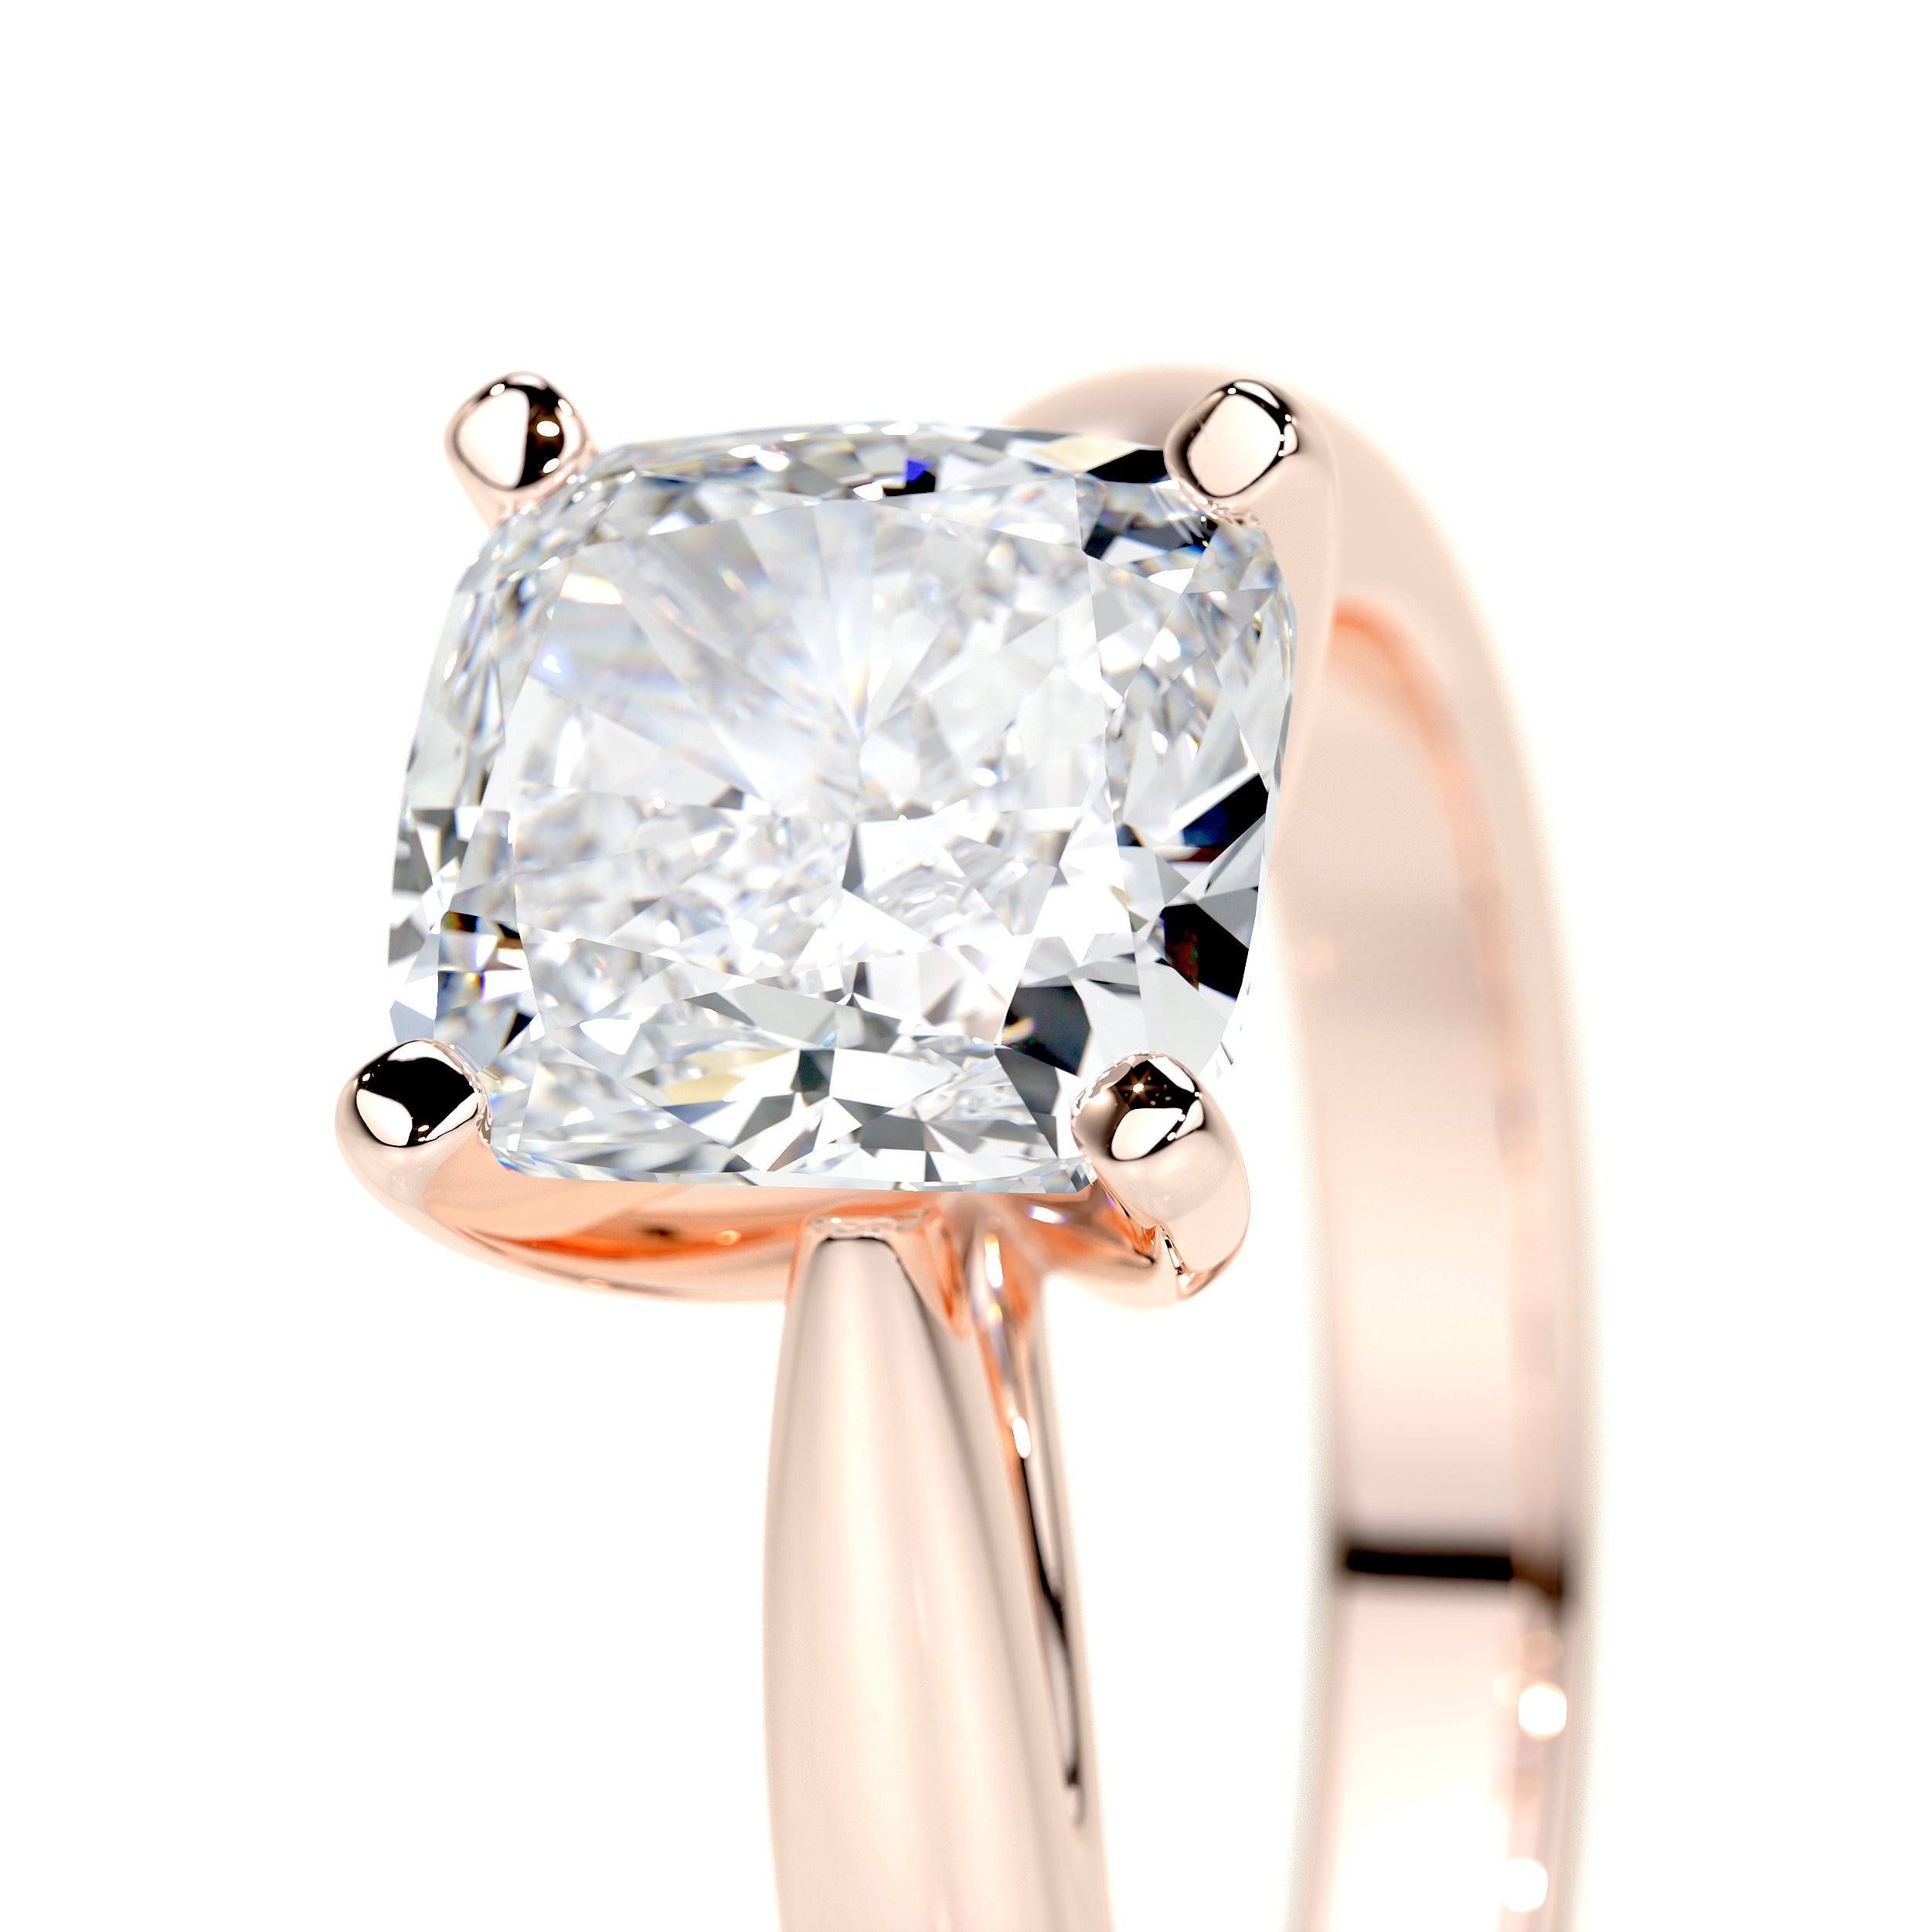 Diana Lab Grown Diamond Ring -14K Rose Gold